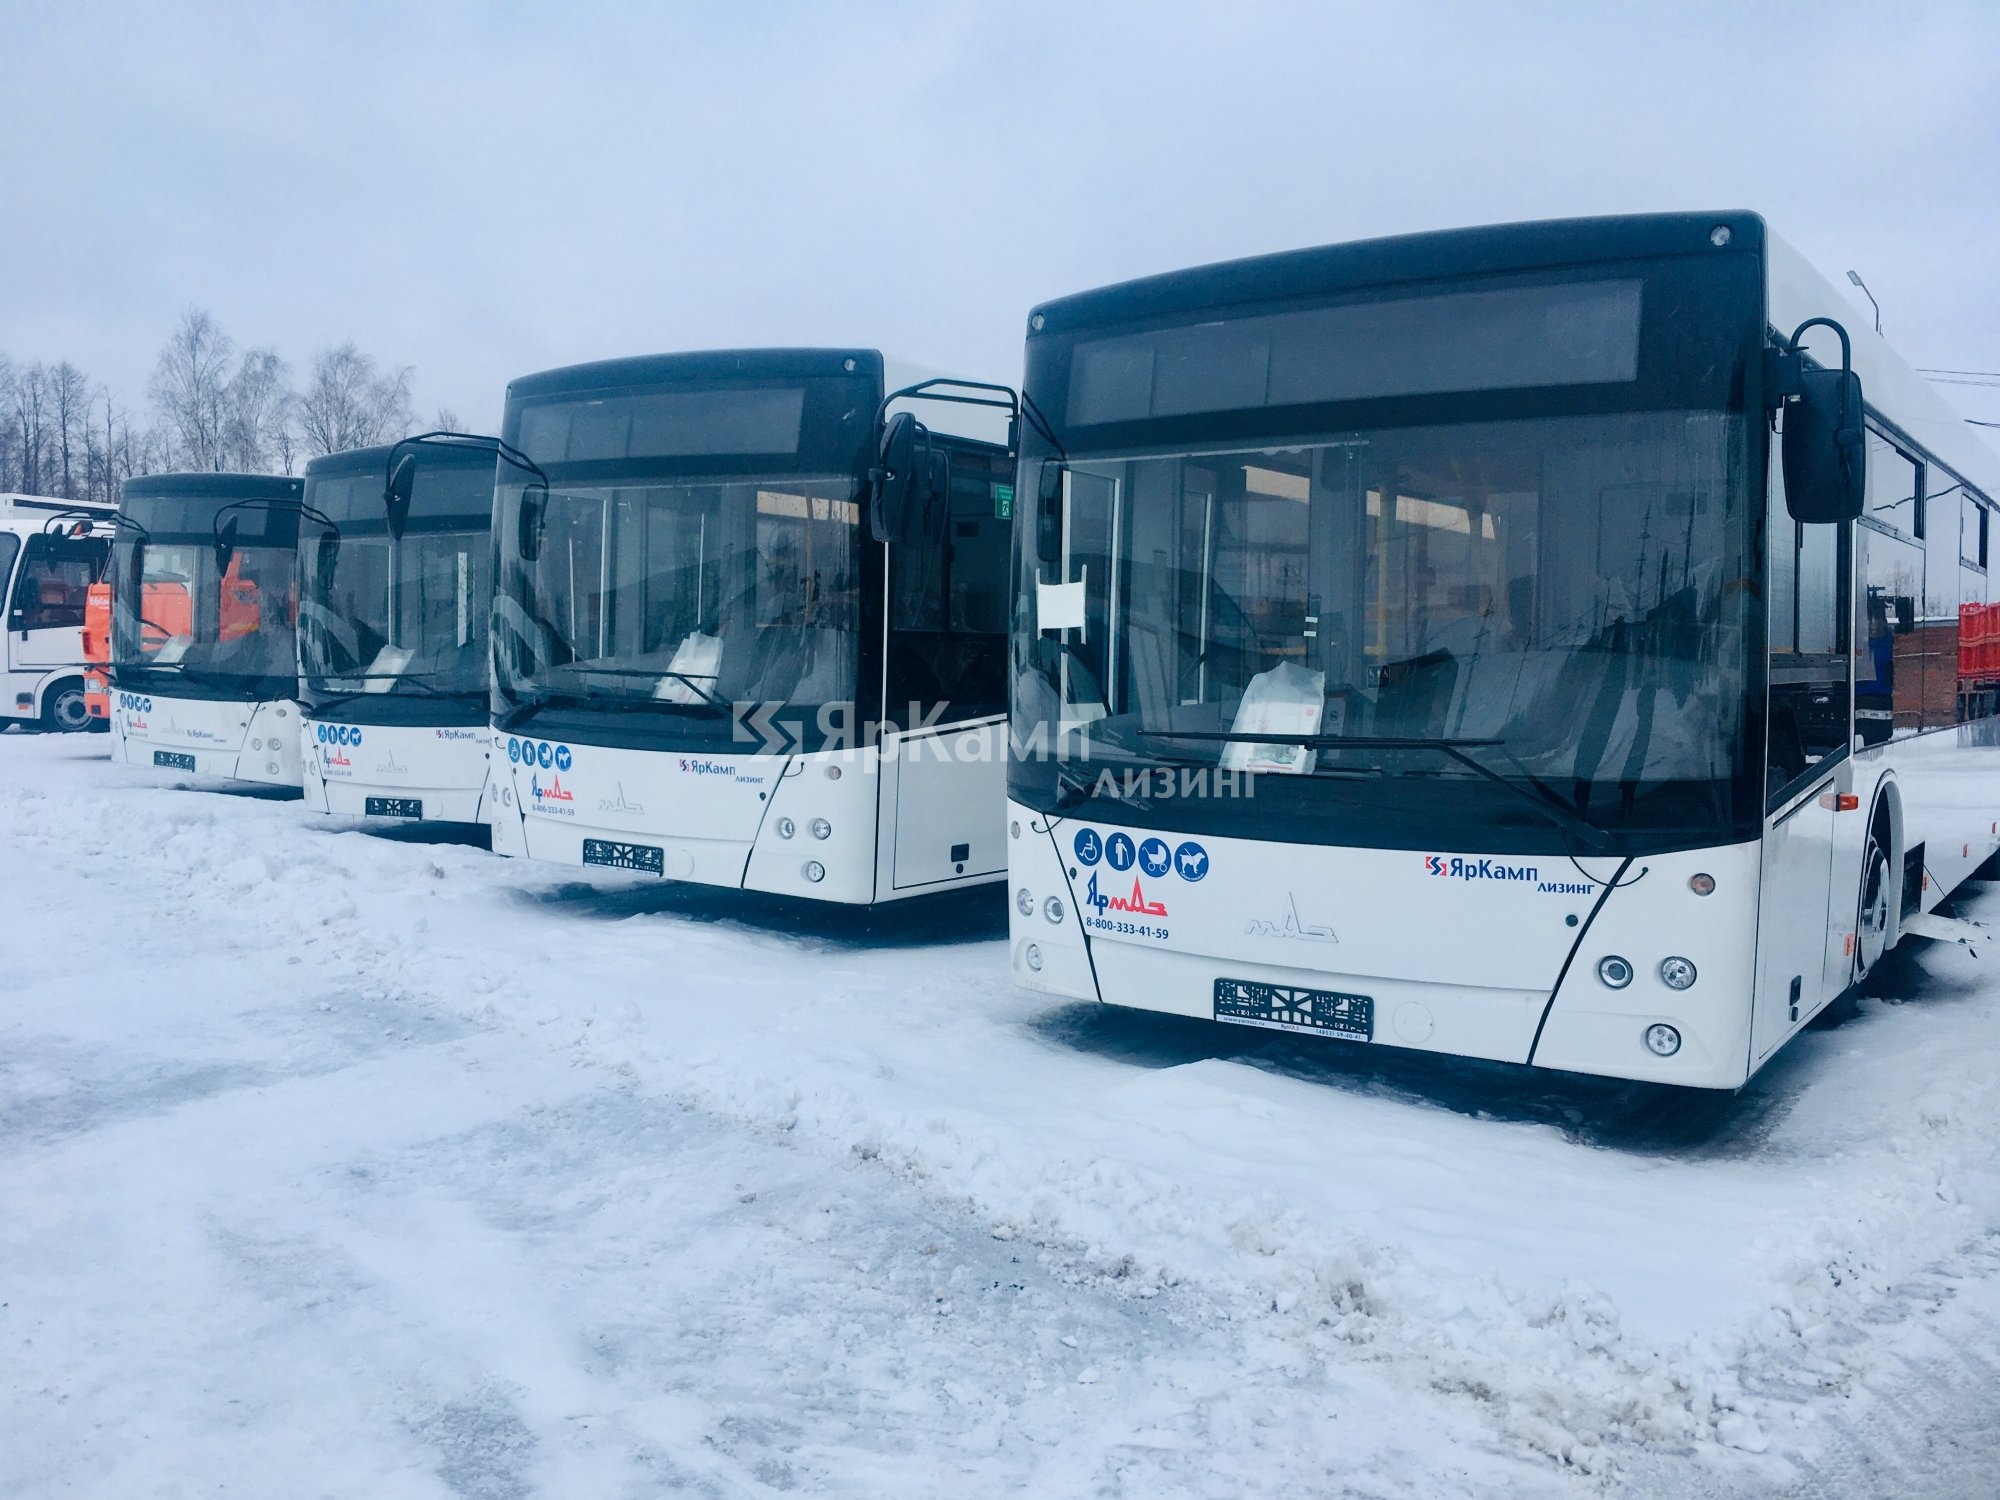 Автобусы МАЗ 103486 переданы в финансовую аренду